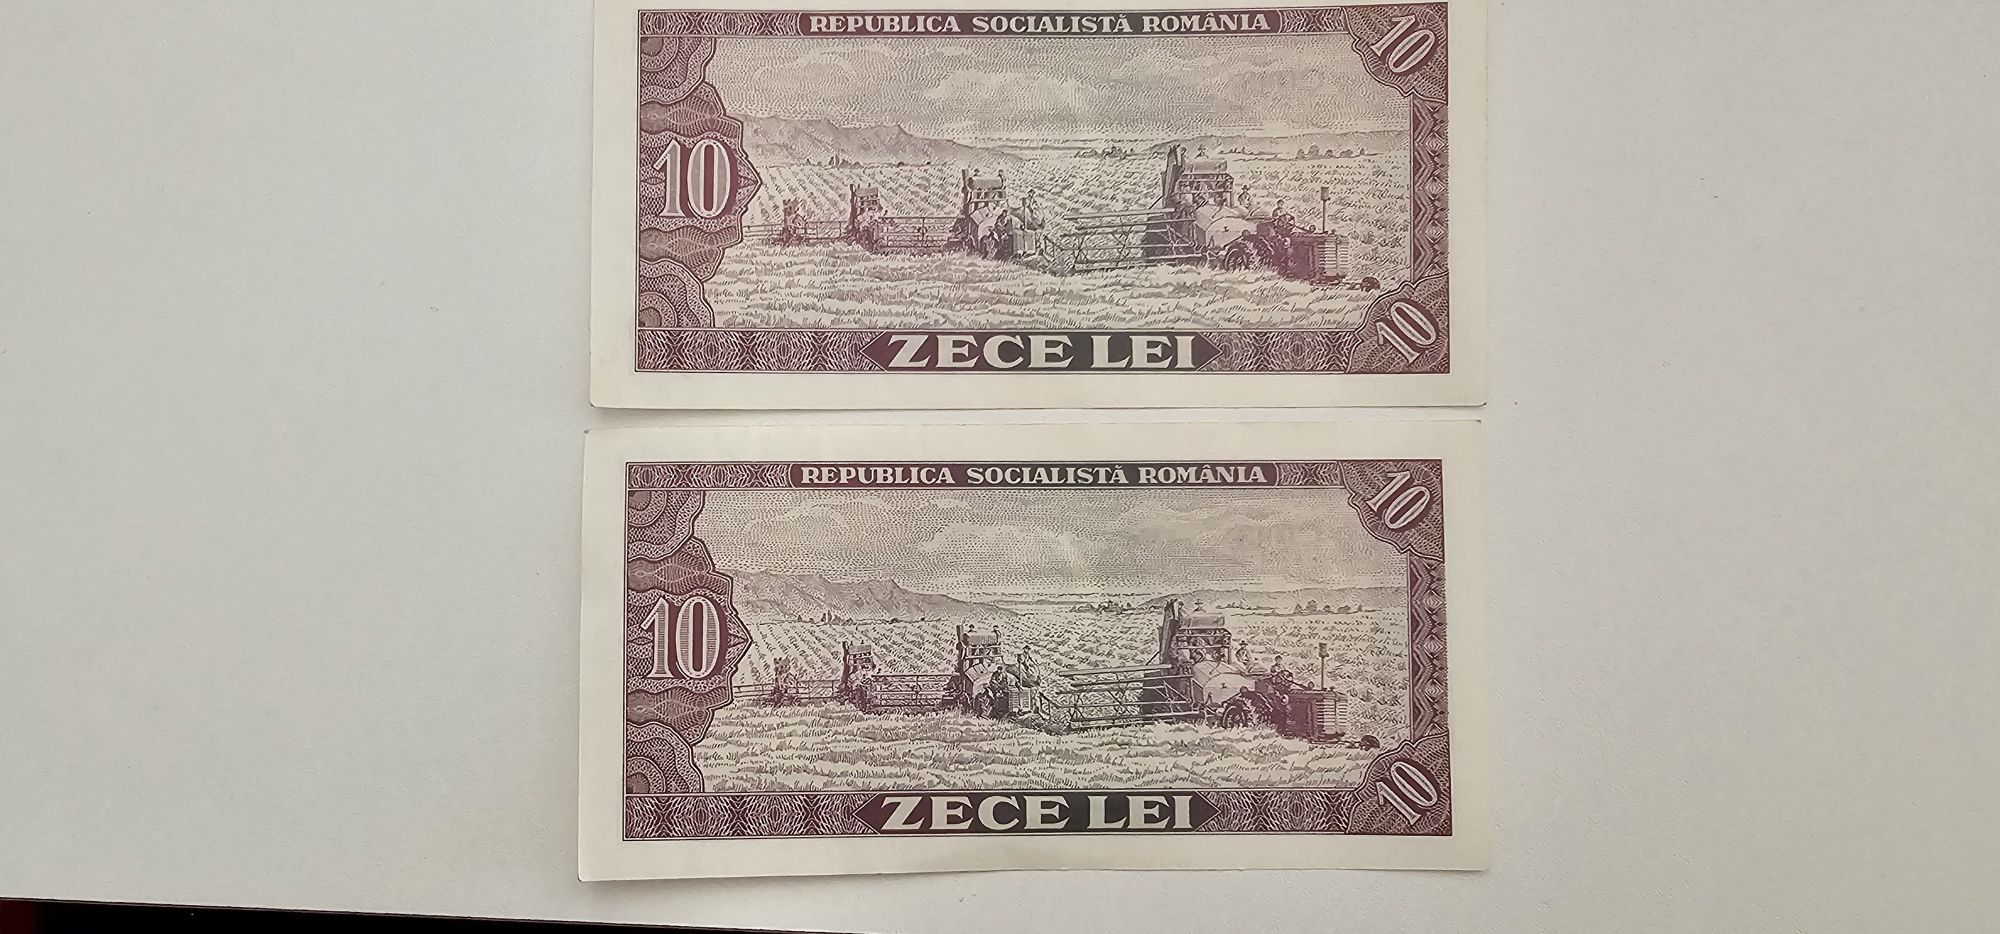 Bancnota 10 lei din 1966, 2 bancnote neutilizate